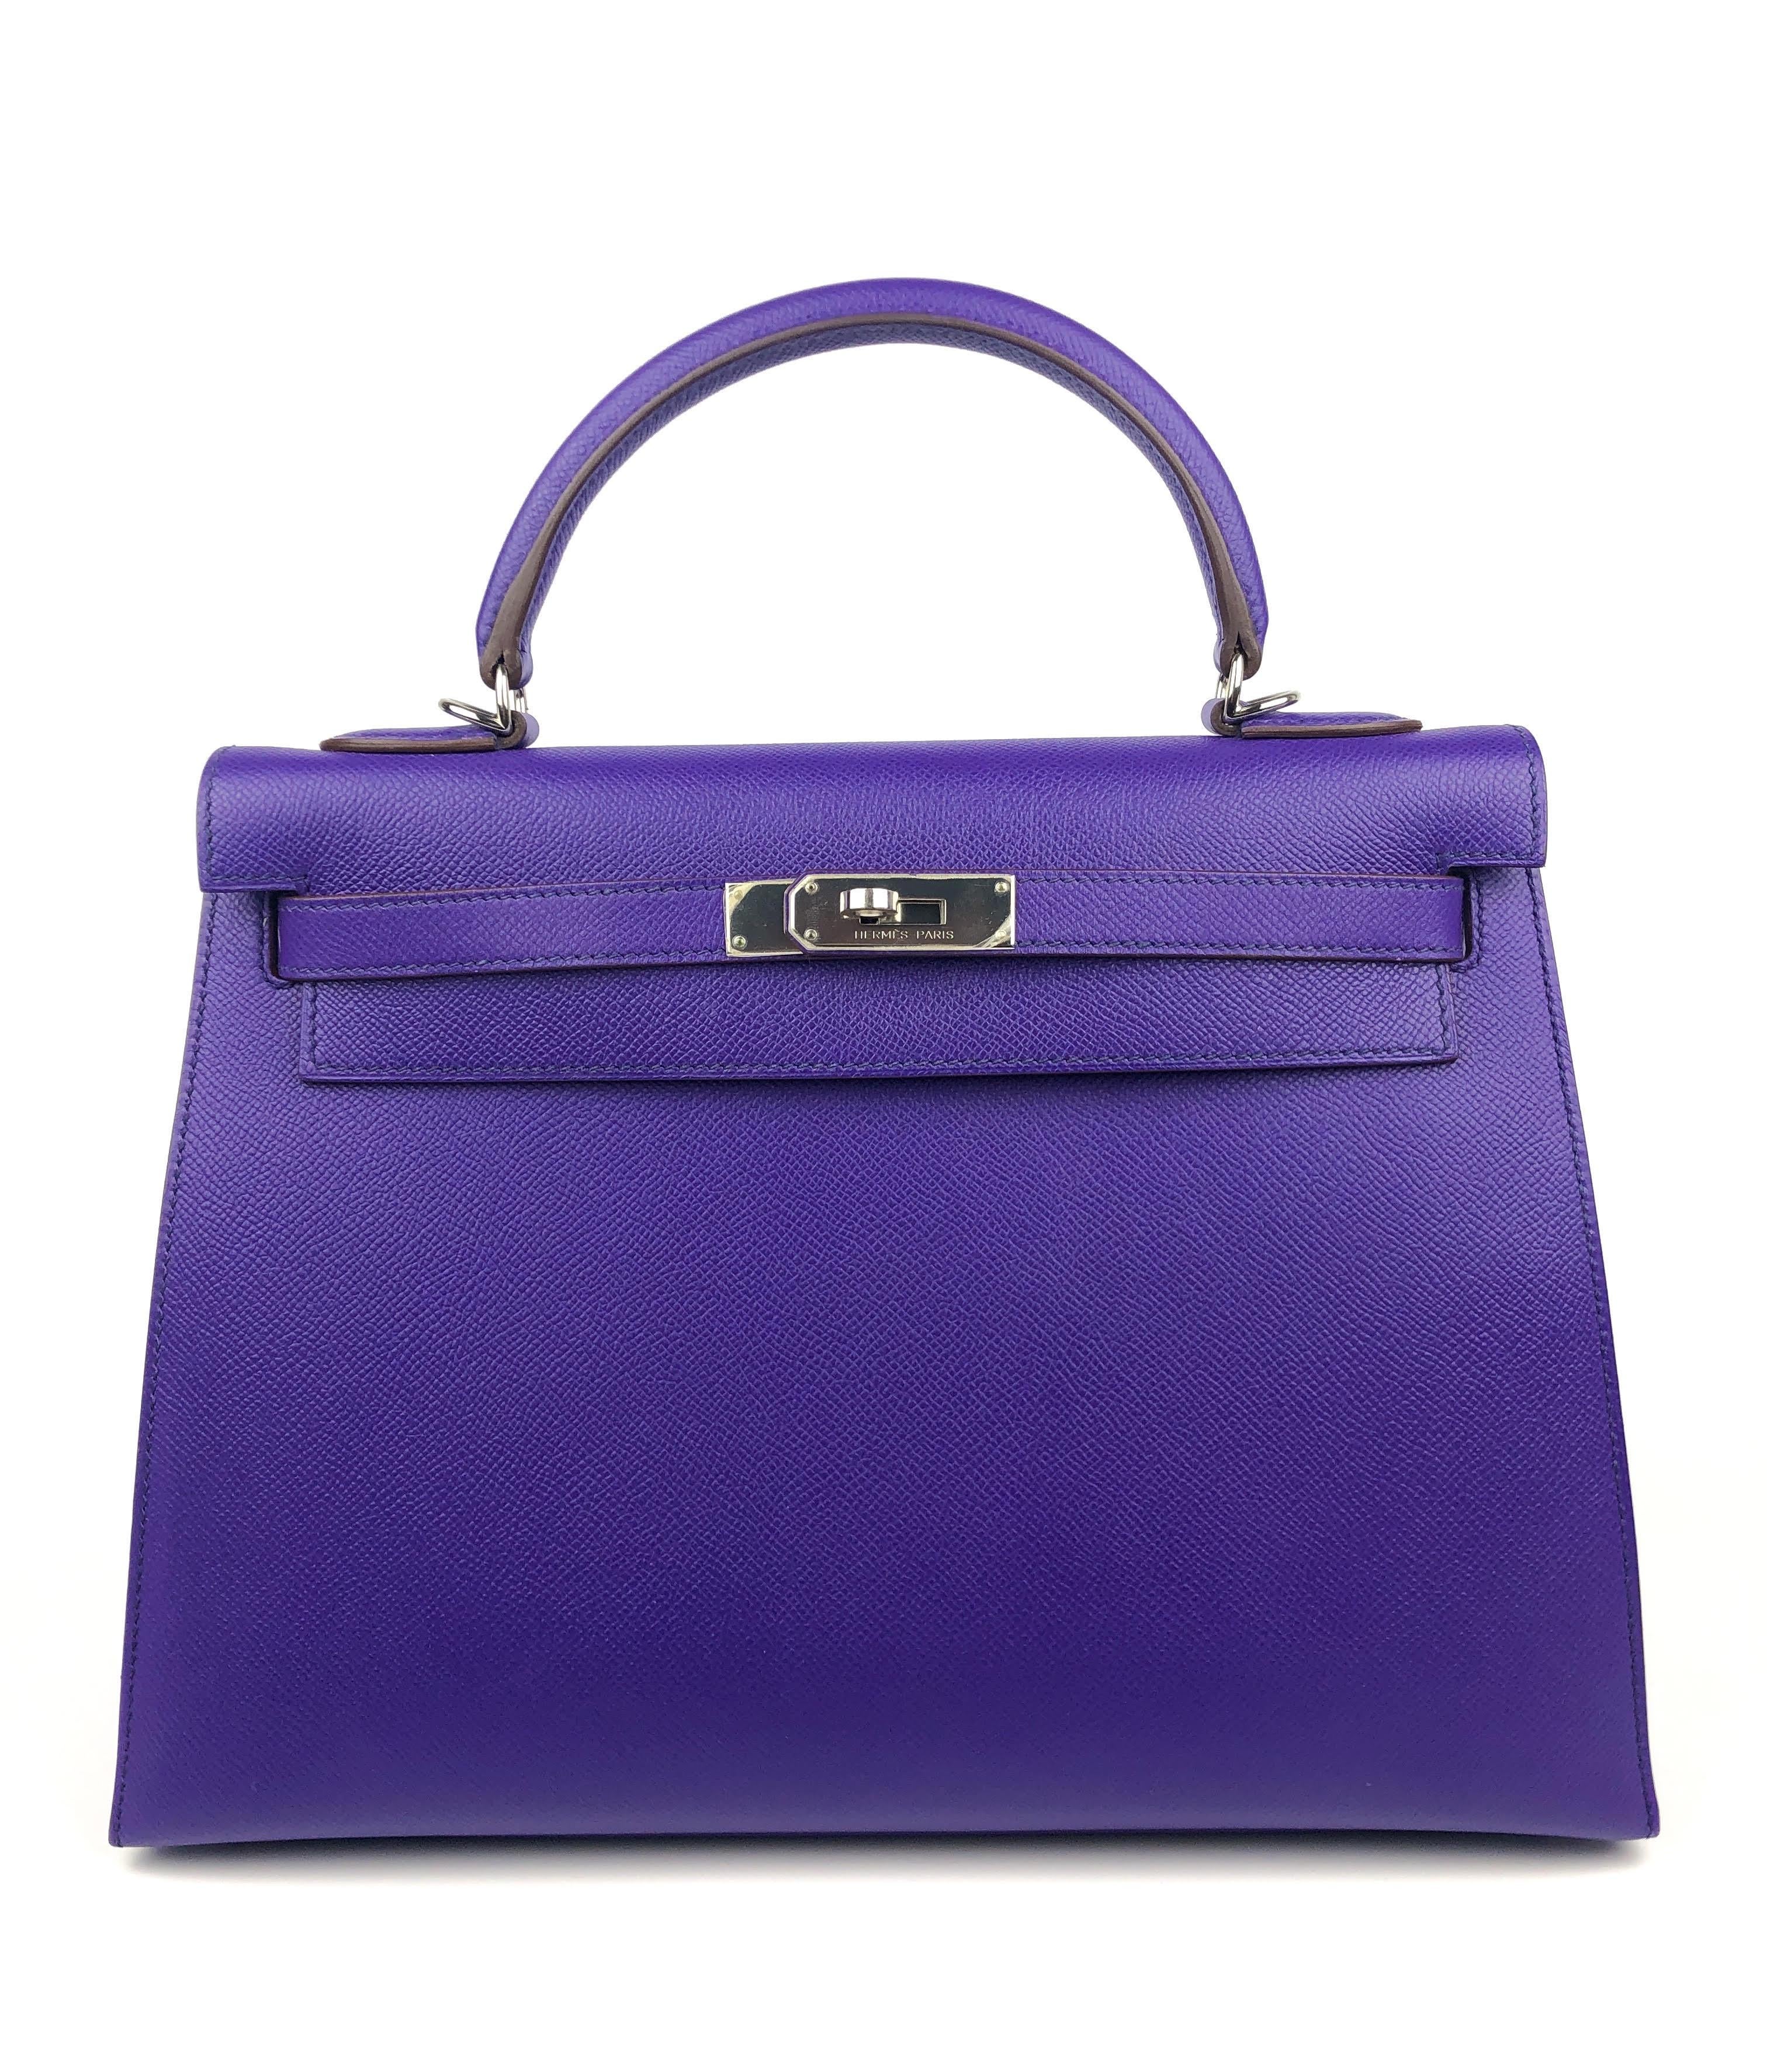 Cet authentique Kelly Sellier Hermès Violet Condit 32 cm est en parfait état, avec le plastique de protection intact sur la quincaillerie.     Les sacs Hermès sont considérés dans le monde entier comme l'objet de luxe par excellence.  Chaque pièce